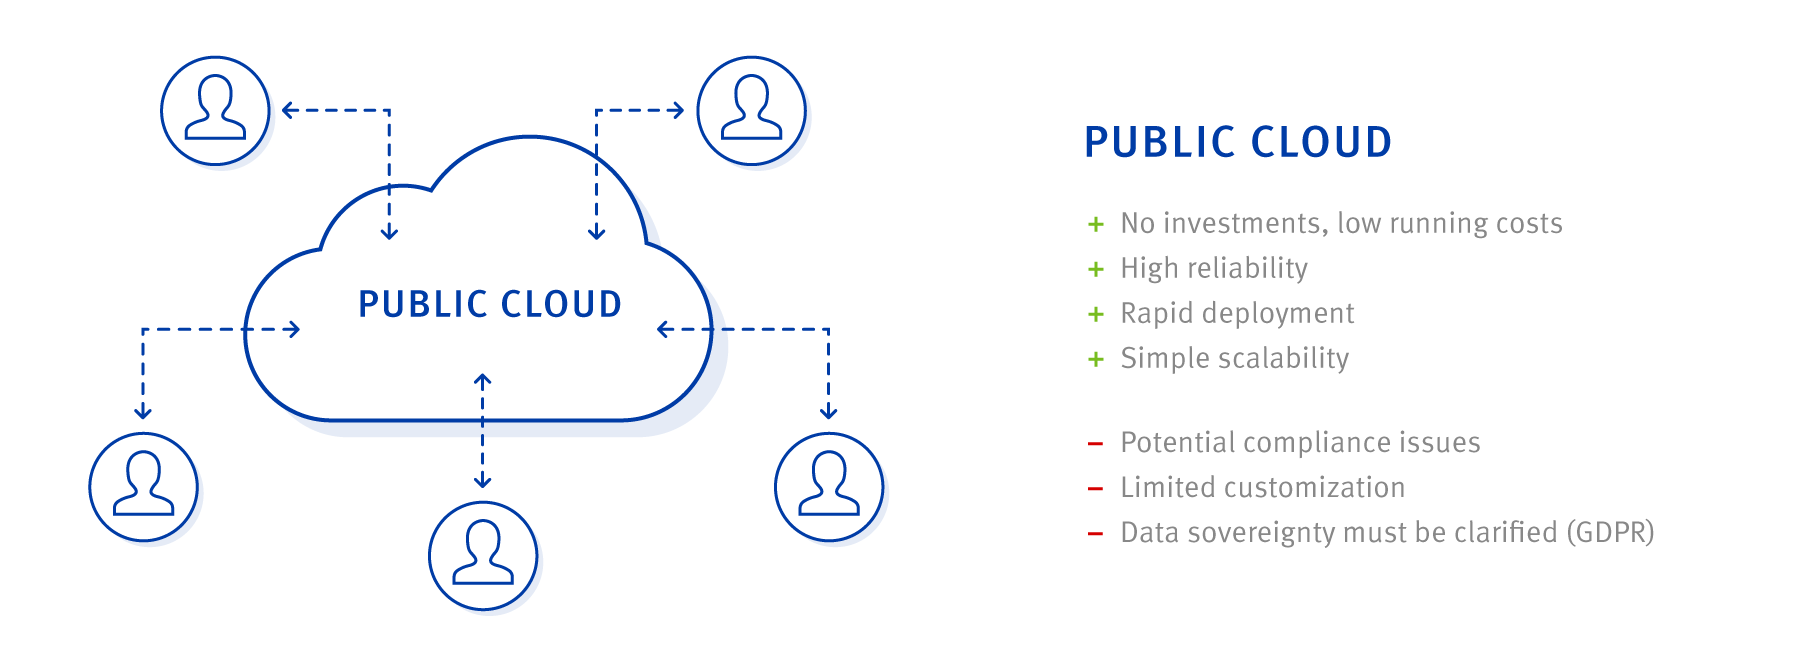 advantages and disadvantages of public cloud